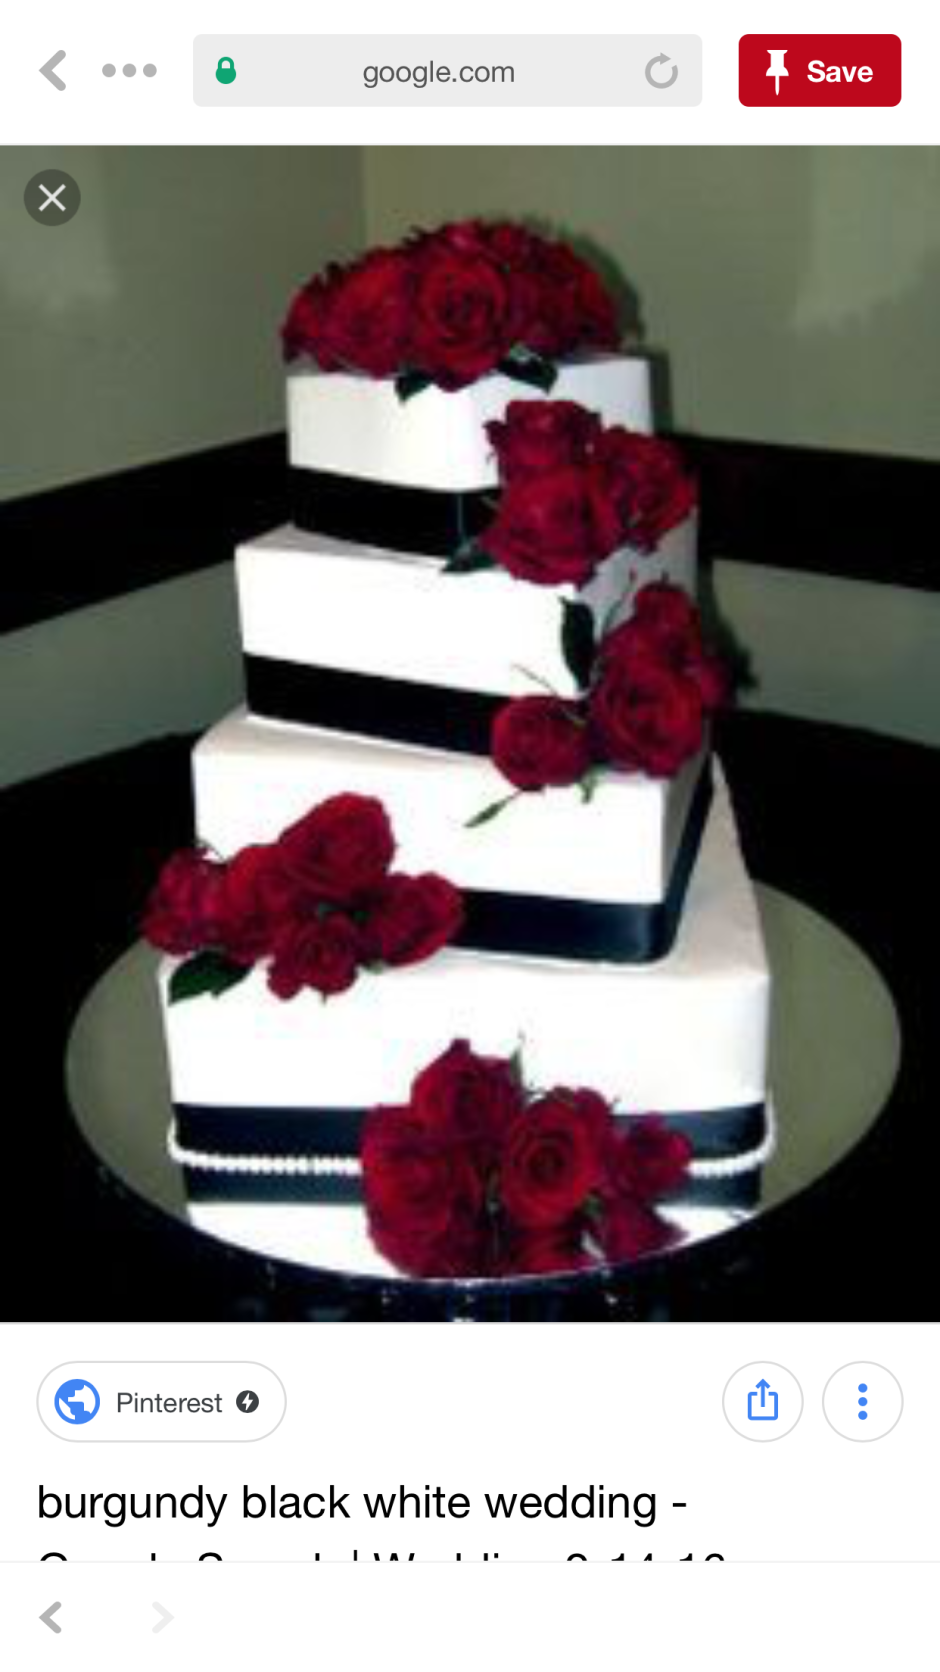 Свадебный торт бело красный двухъярусный